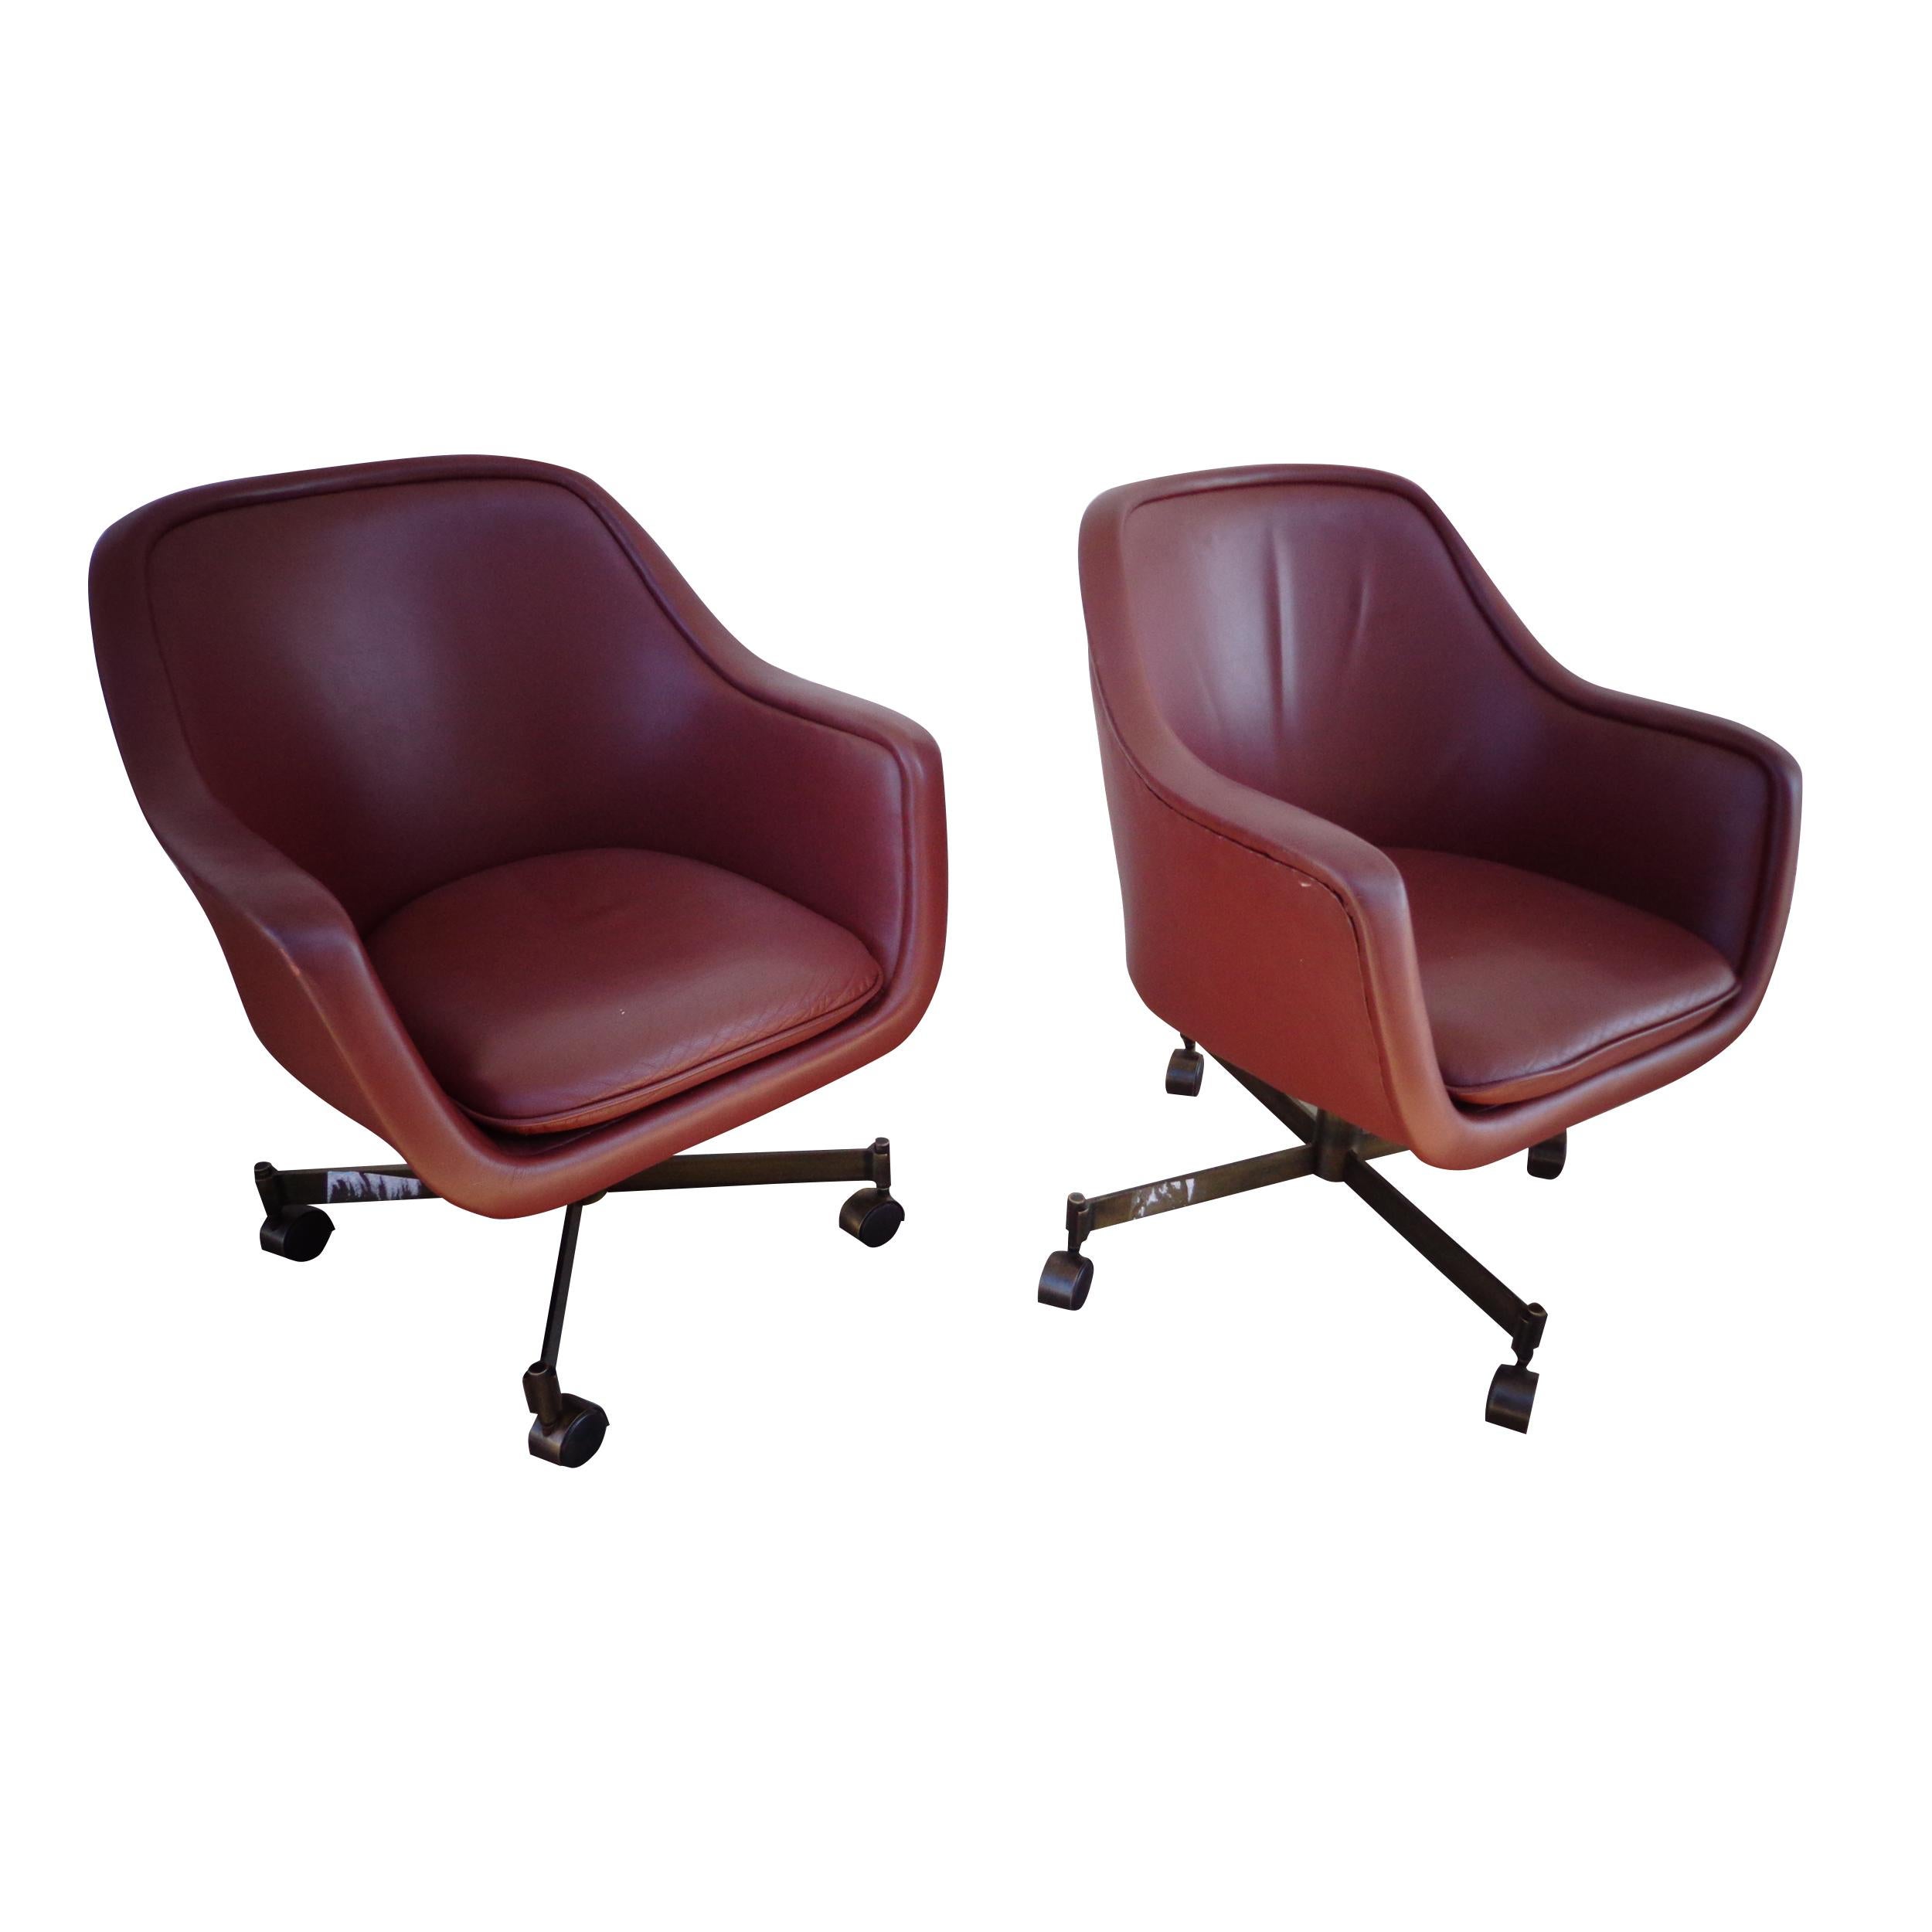 1 fauteuil en cuir à dossier baril Ward Bennett pour Brickel and associates


fauteuil de salle de conférence pivotant 4 étoiles à base de bronze anodisé dans un riche cuir brun.

La chaise pivote et est réglable en hauteur. Quatre disponibles.